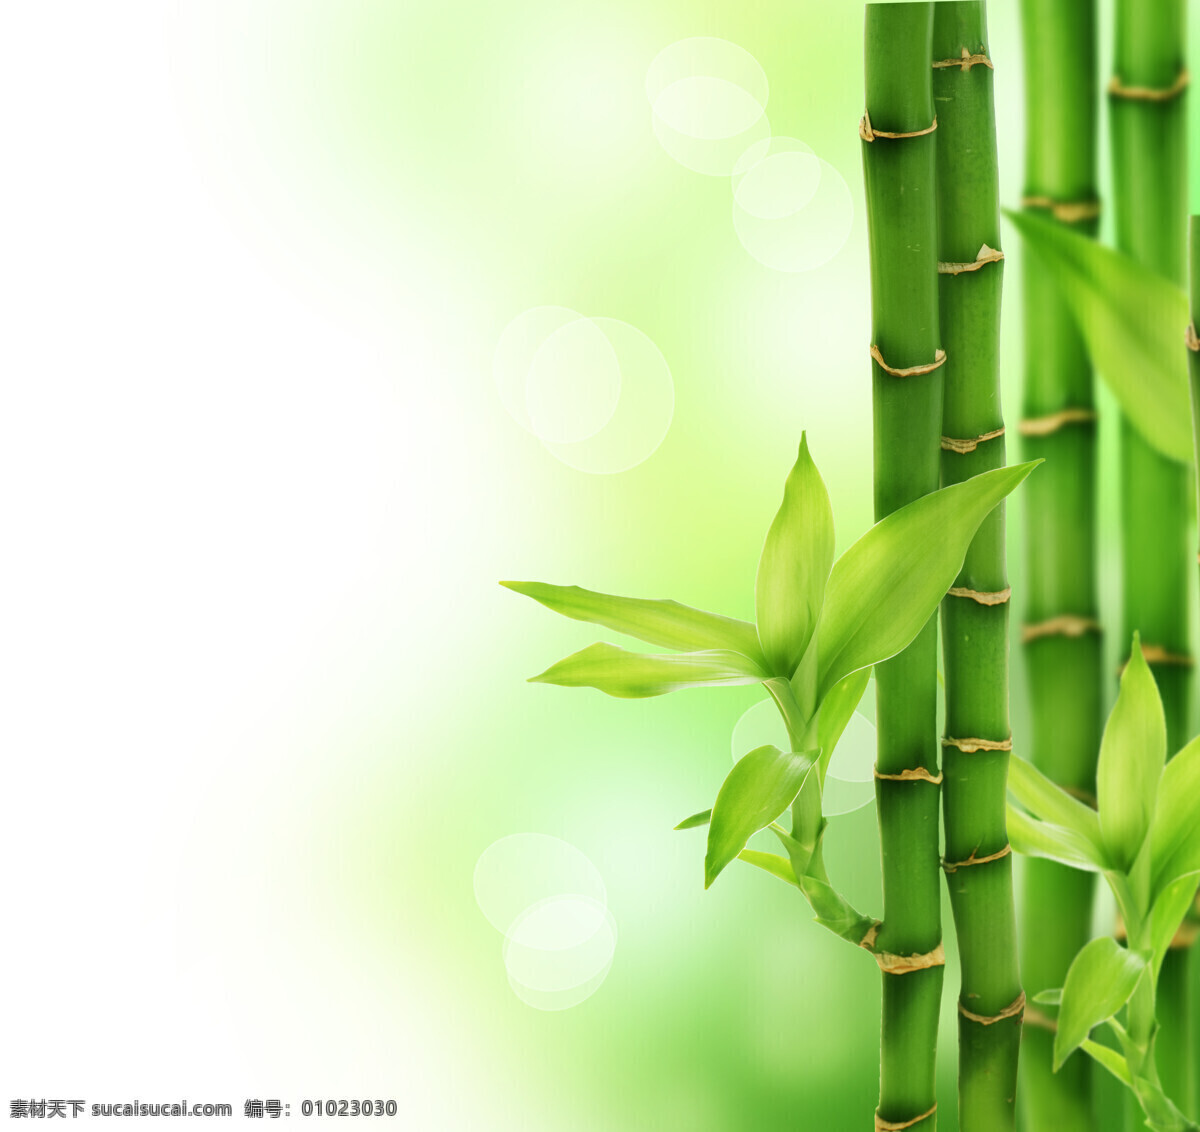 绿色竹子 竹子 竹叶 叶子 绿叶 春天 春的气息 保护环境 绿色家园 绿色环保 创意广告 公益广告 环保 绿色 彩色 世界 我们的家园 联想 高清图片 绿色家园系列